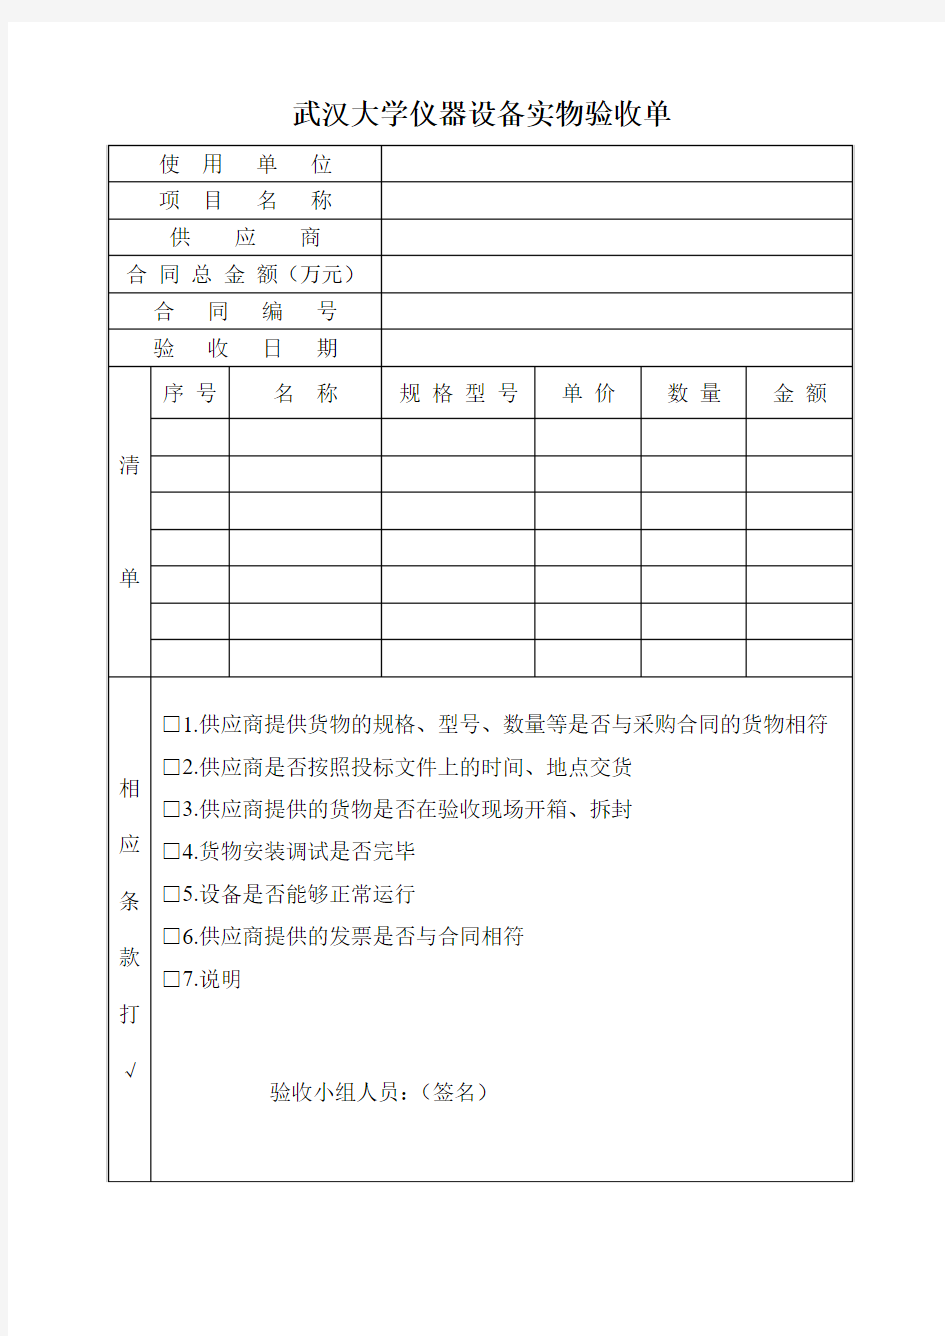 武汉大学仪器设备实物验收单